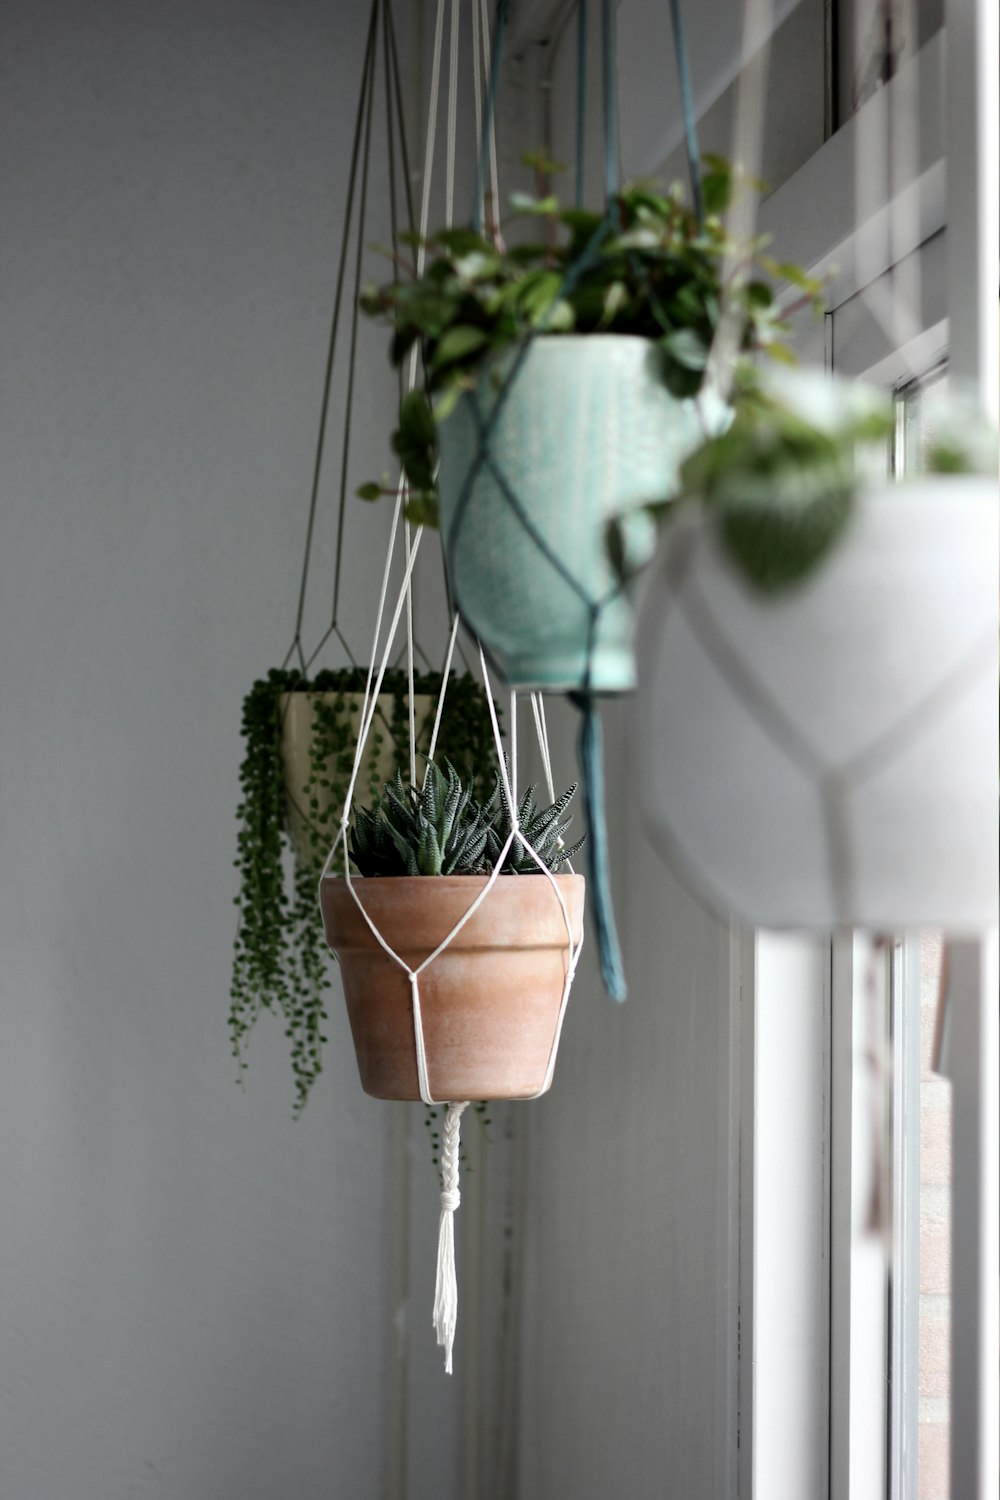 piante assortite con vasi sospesi vicino alla finestra